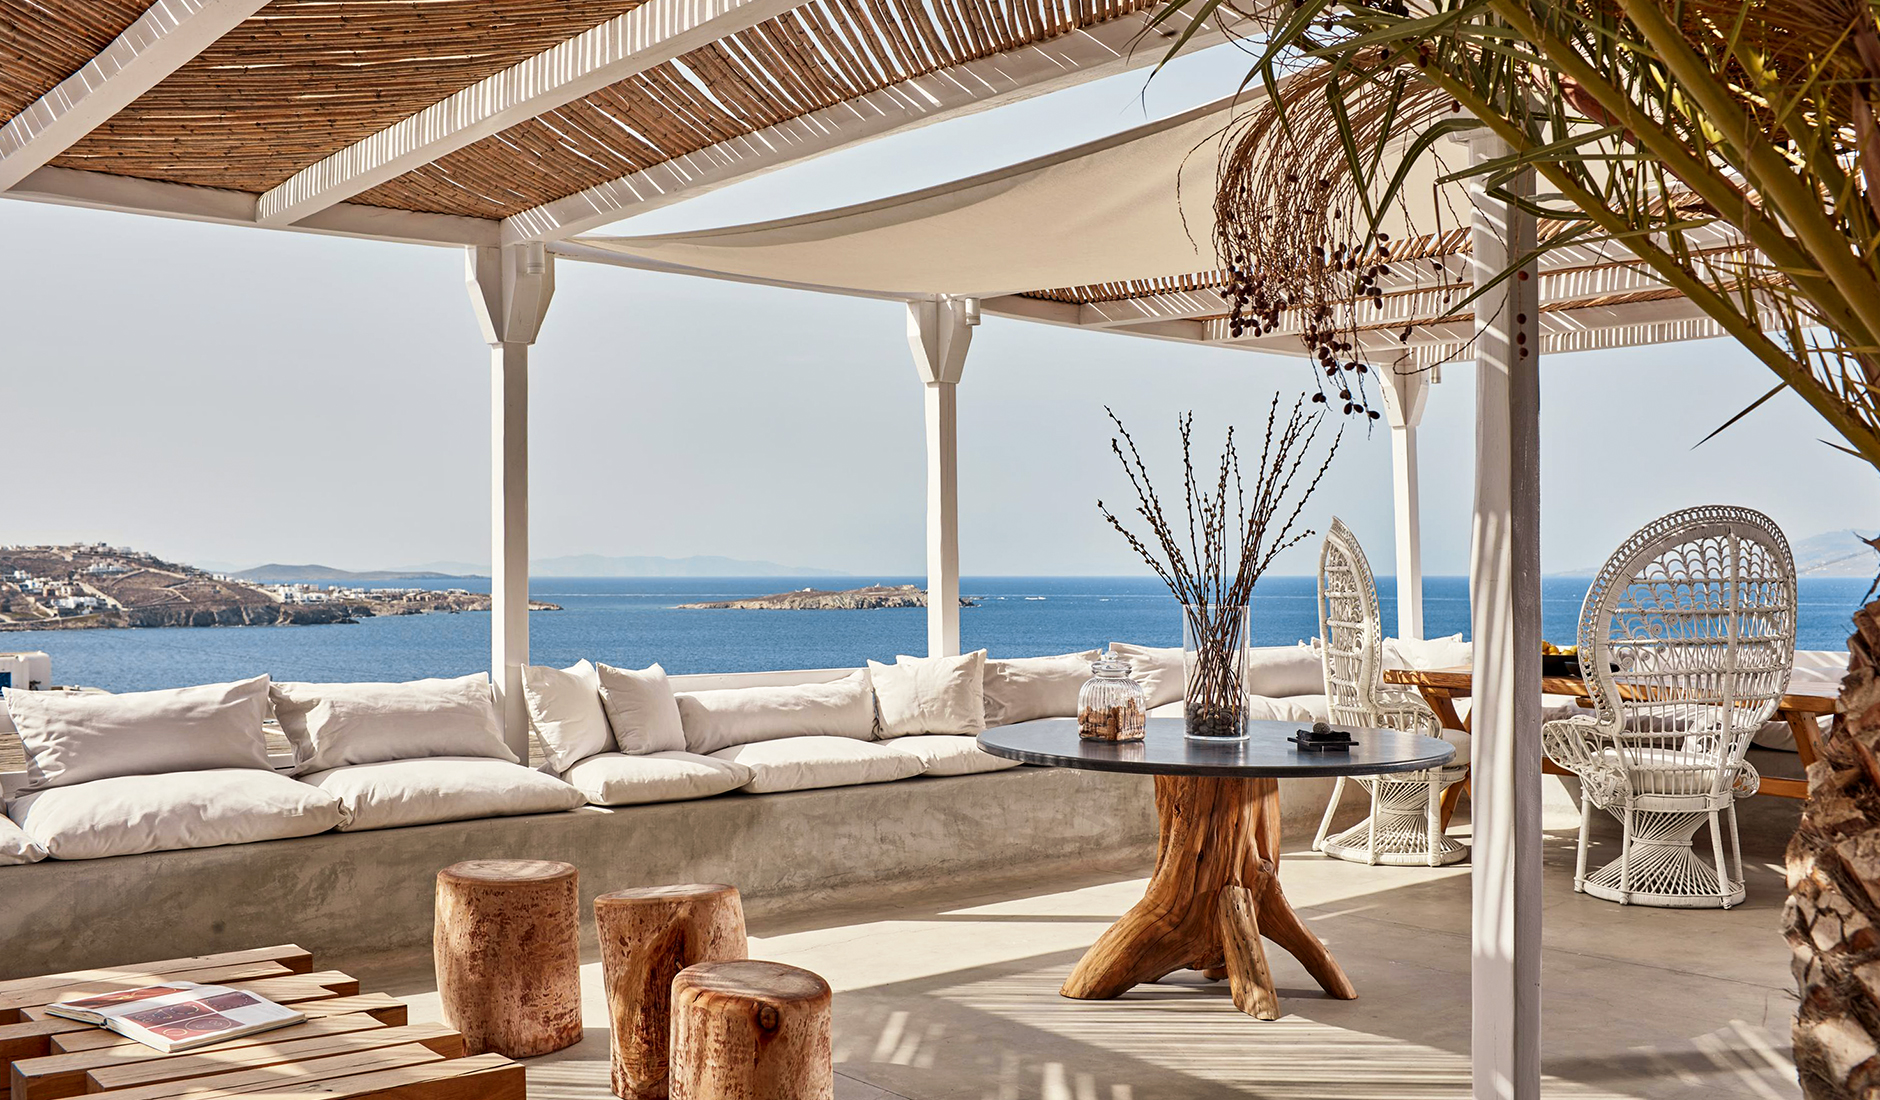 Boheme Mykonos, Mykonos, Greece. The Best Luxury Hotels In Mykonos. TravelPlusStyle.com